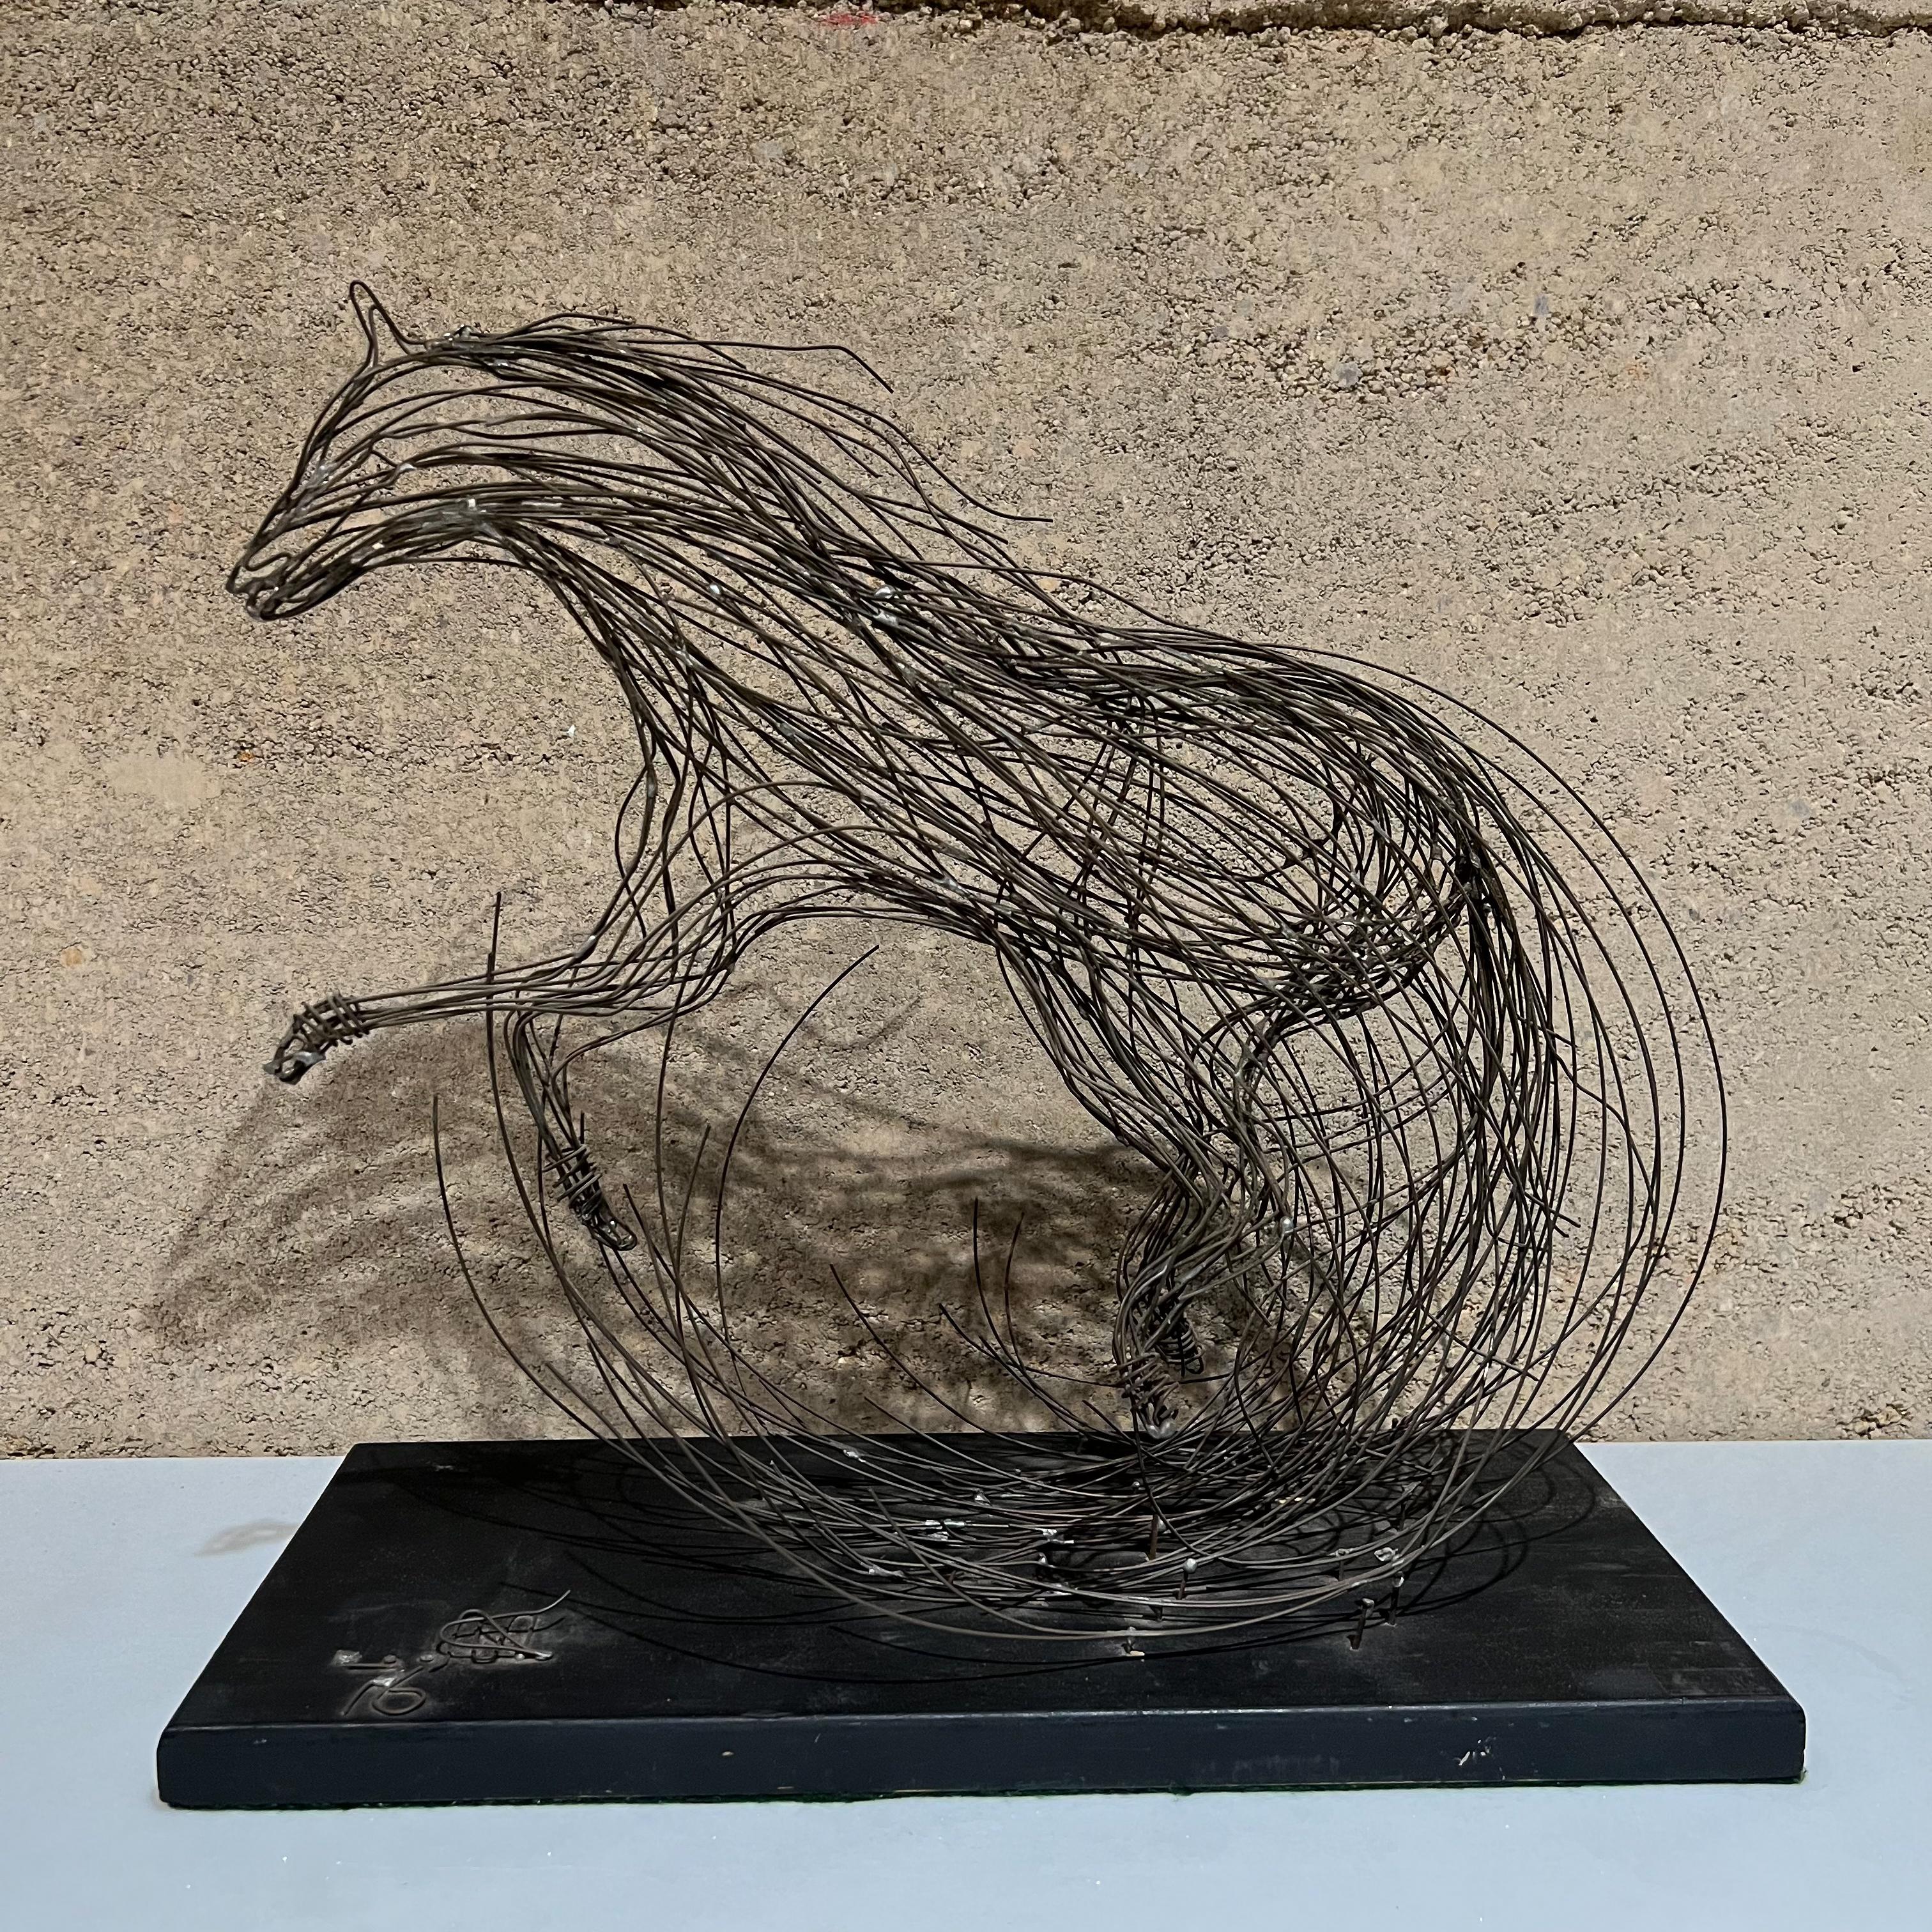 1970er Jahre Skulpturaler Modernismus Pferd Tischskulptur Brutalistische Metall Draht Kunst
Signatur des Künstlers in Draht auf Holzsockel genagelt. Es fehlt ein Teil der Unterschrift. 
Unfähig zu lesen.
14.5 hoch x 15,25 b x 7 t
Gebrauchter,